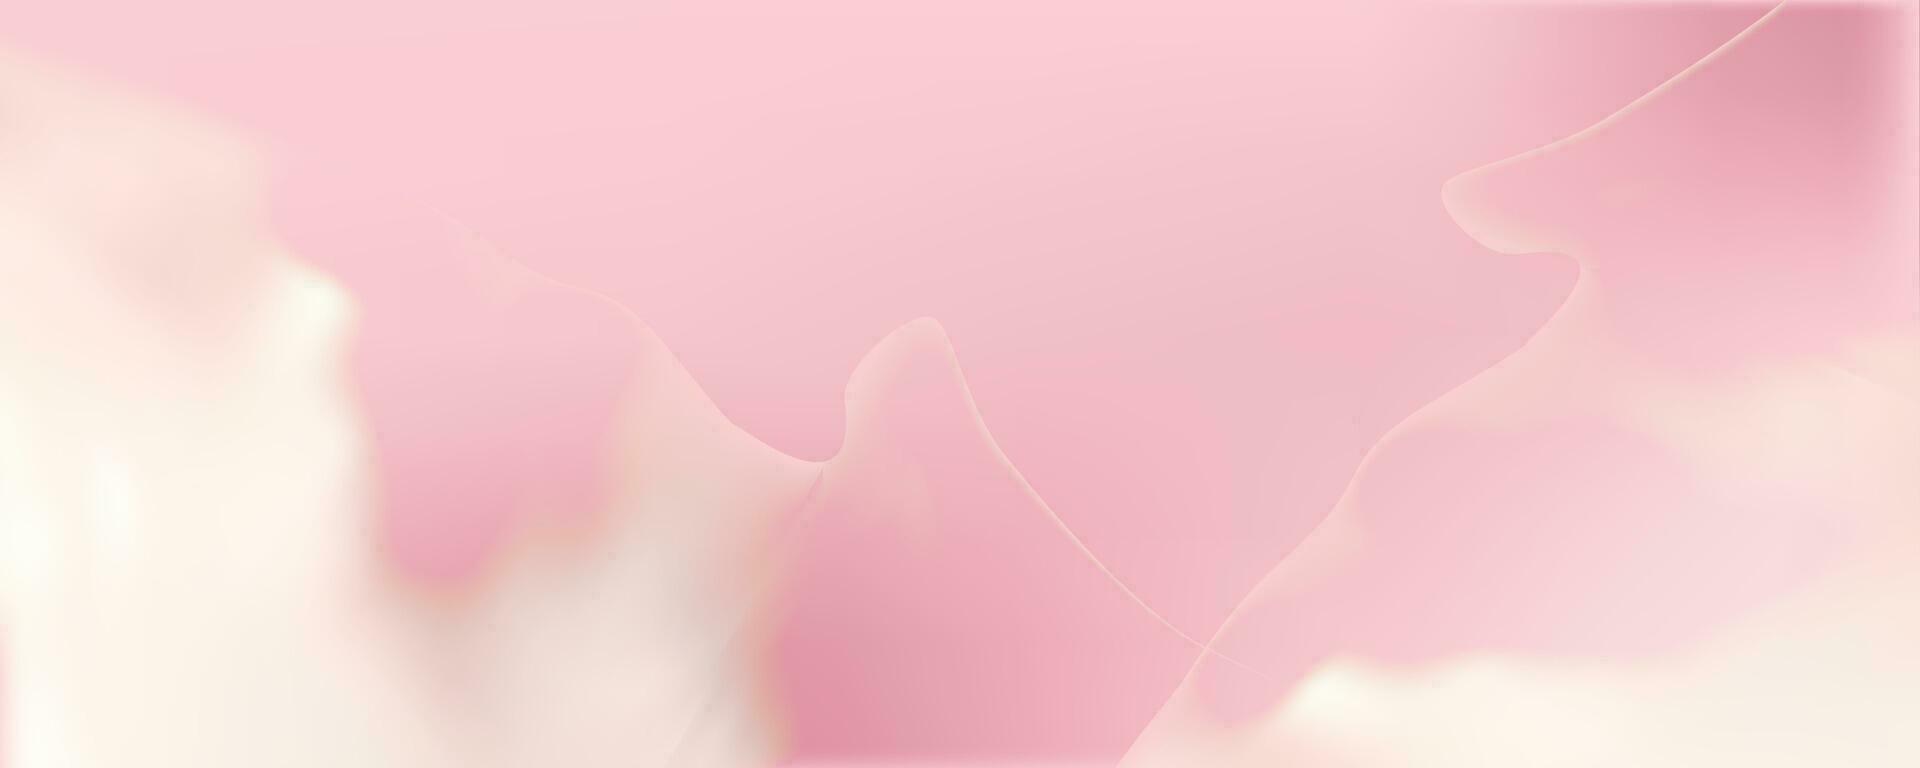 rosa diffusione struttura di crema, ghiaccio crema o glassatura. leggero sfondo di fragola dolce, gelatina o confetteria crema. vettore